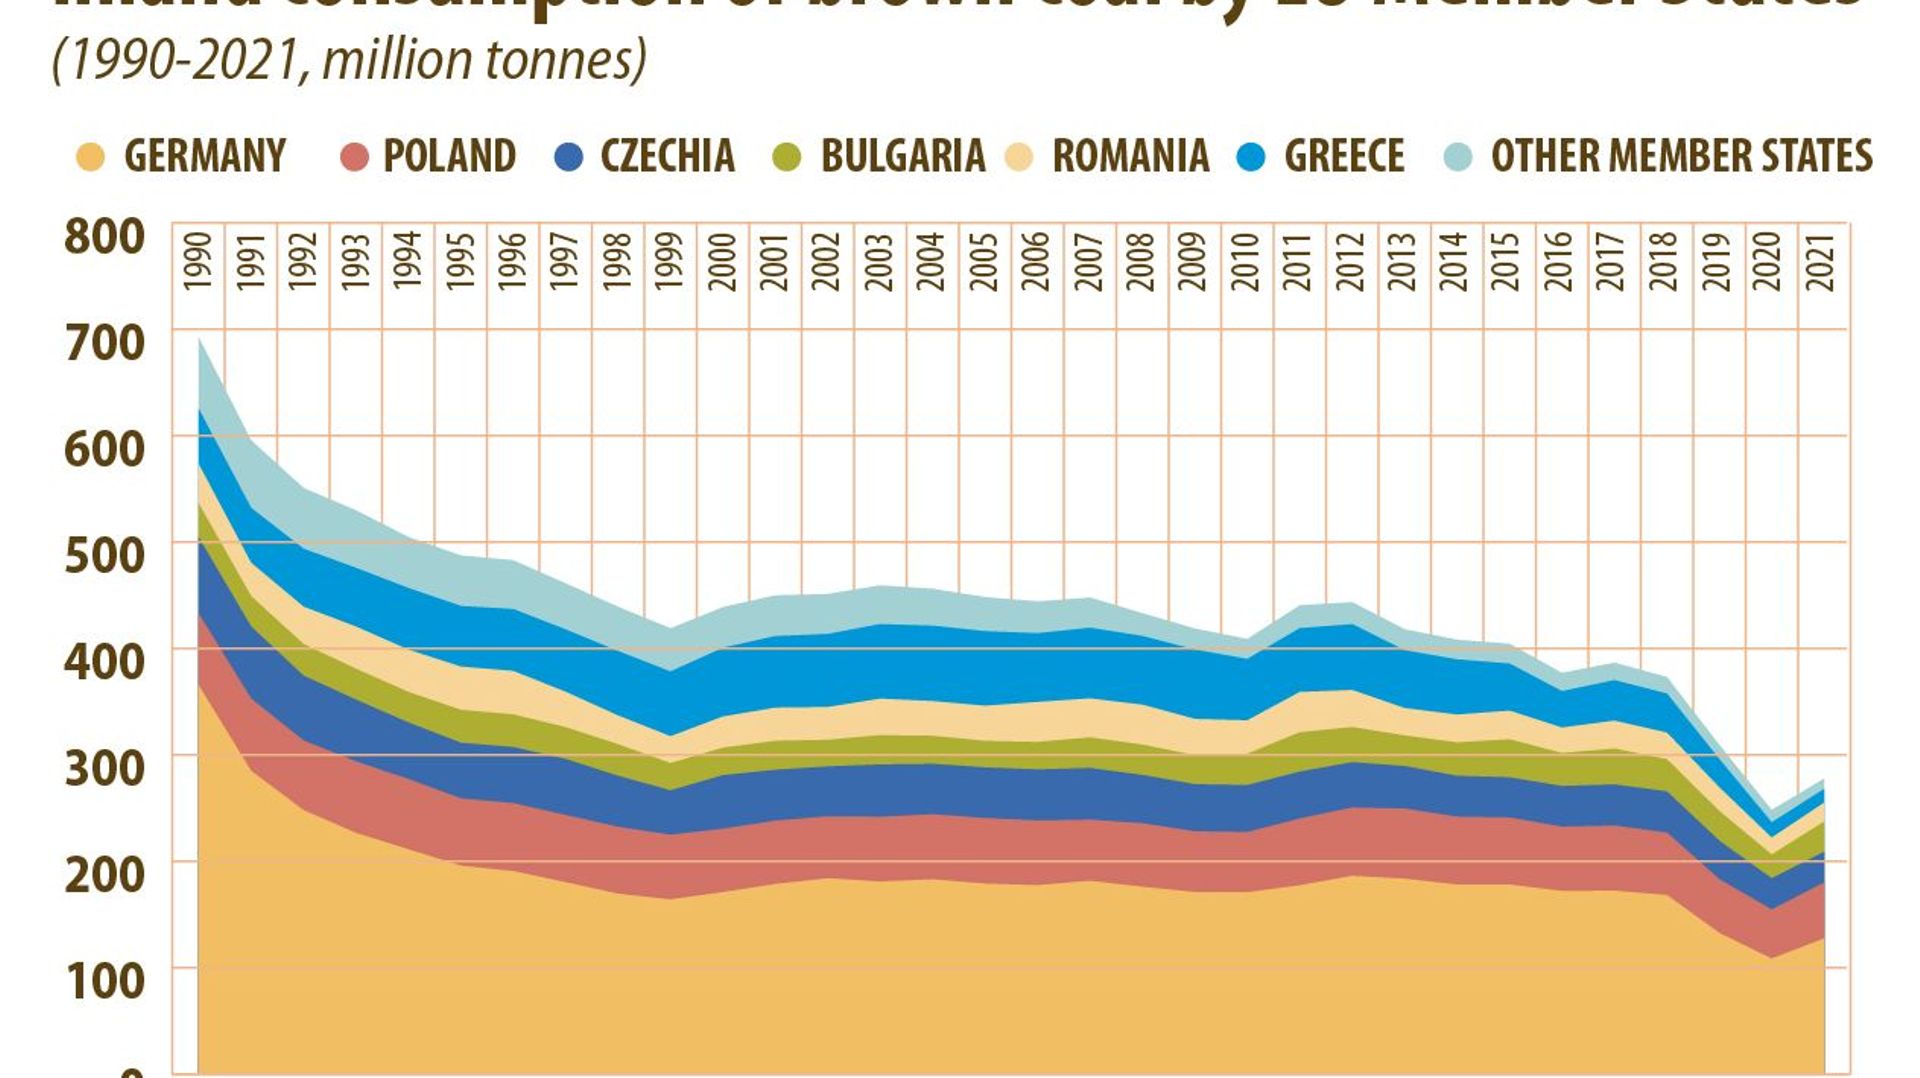 Evolution de la consommation de charbon dans l’Union Européenne (en million de tonnes), 1990-2021. Les données de 2021 sont basées sur une addition des chiffres mensuels cumulés.